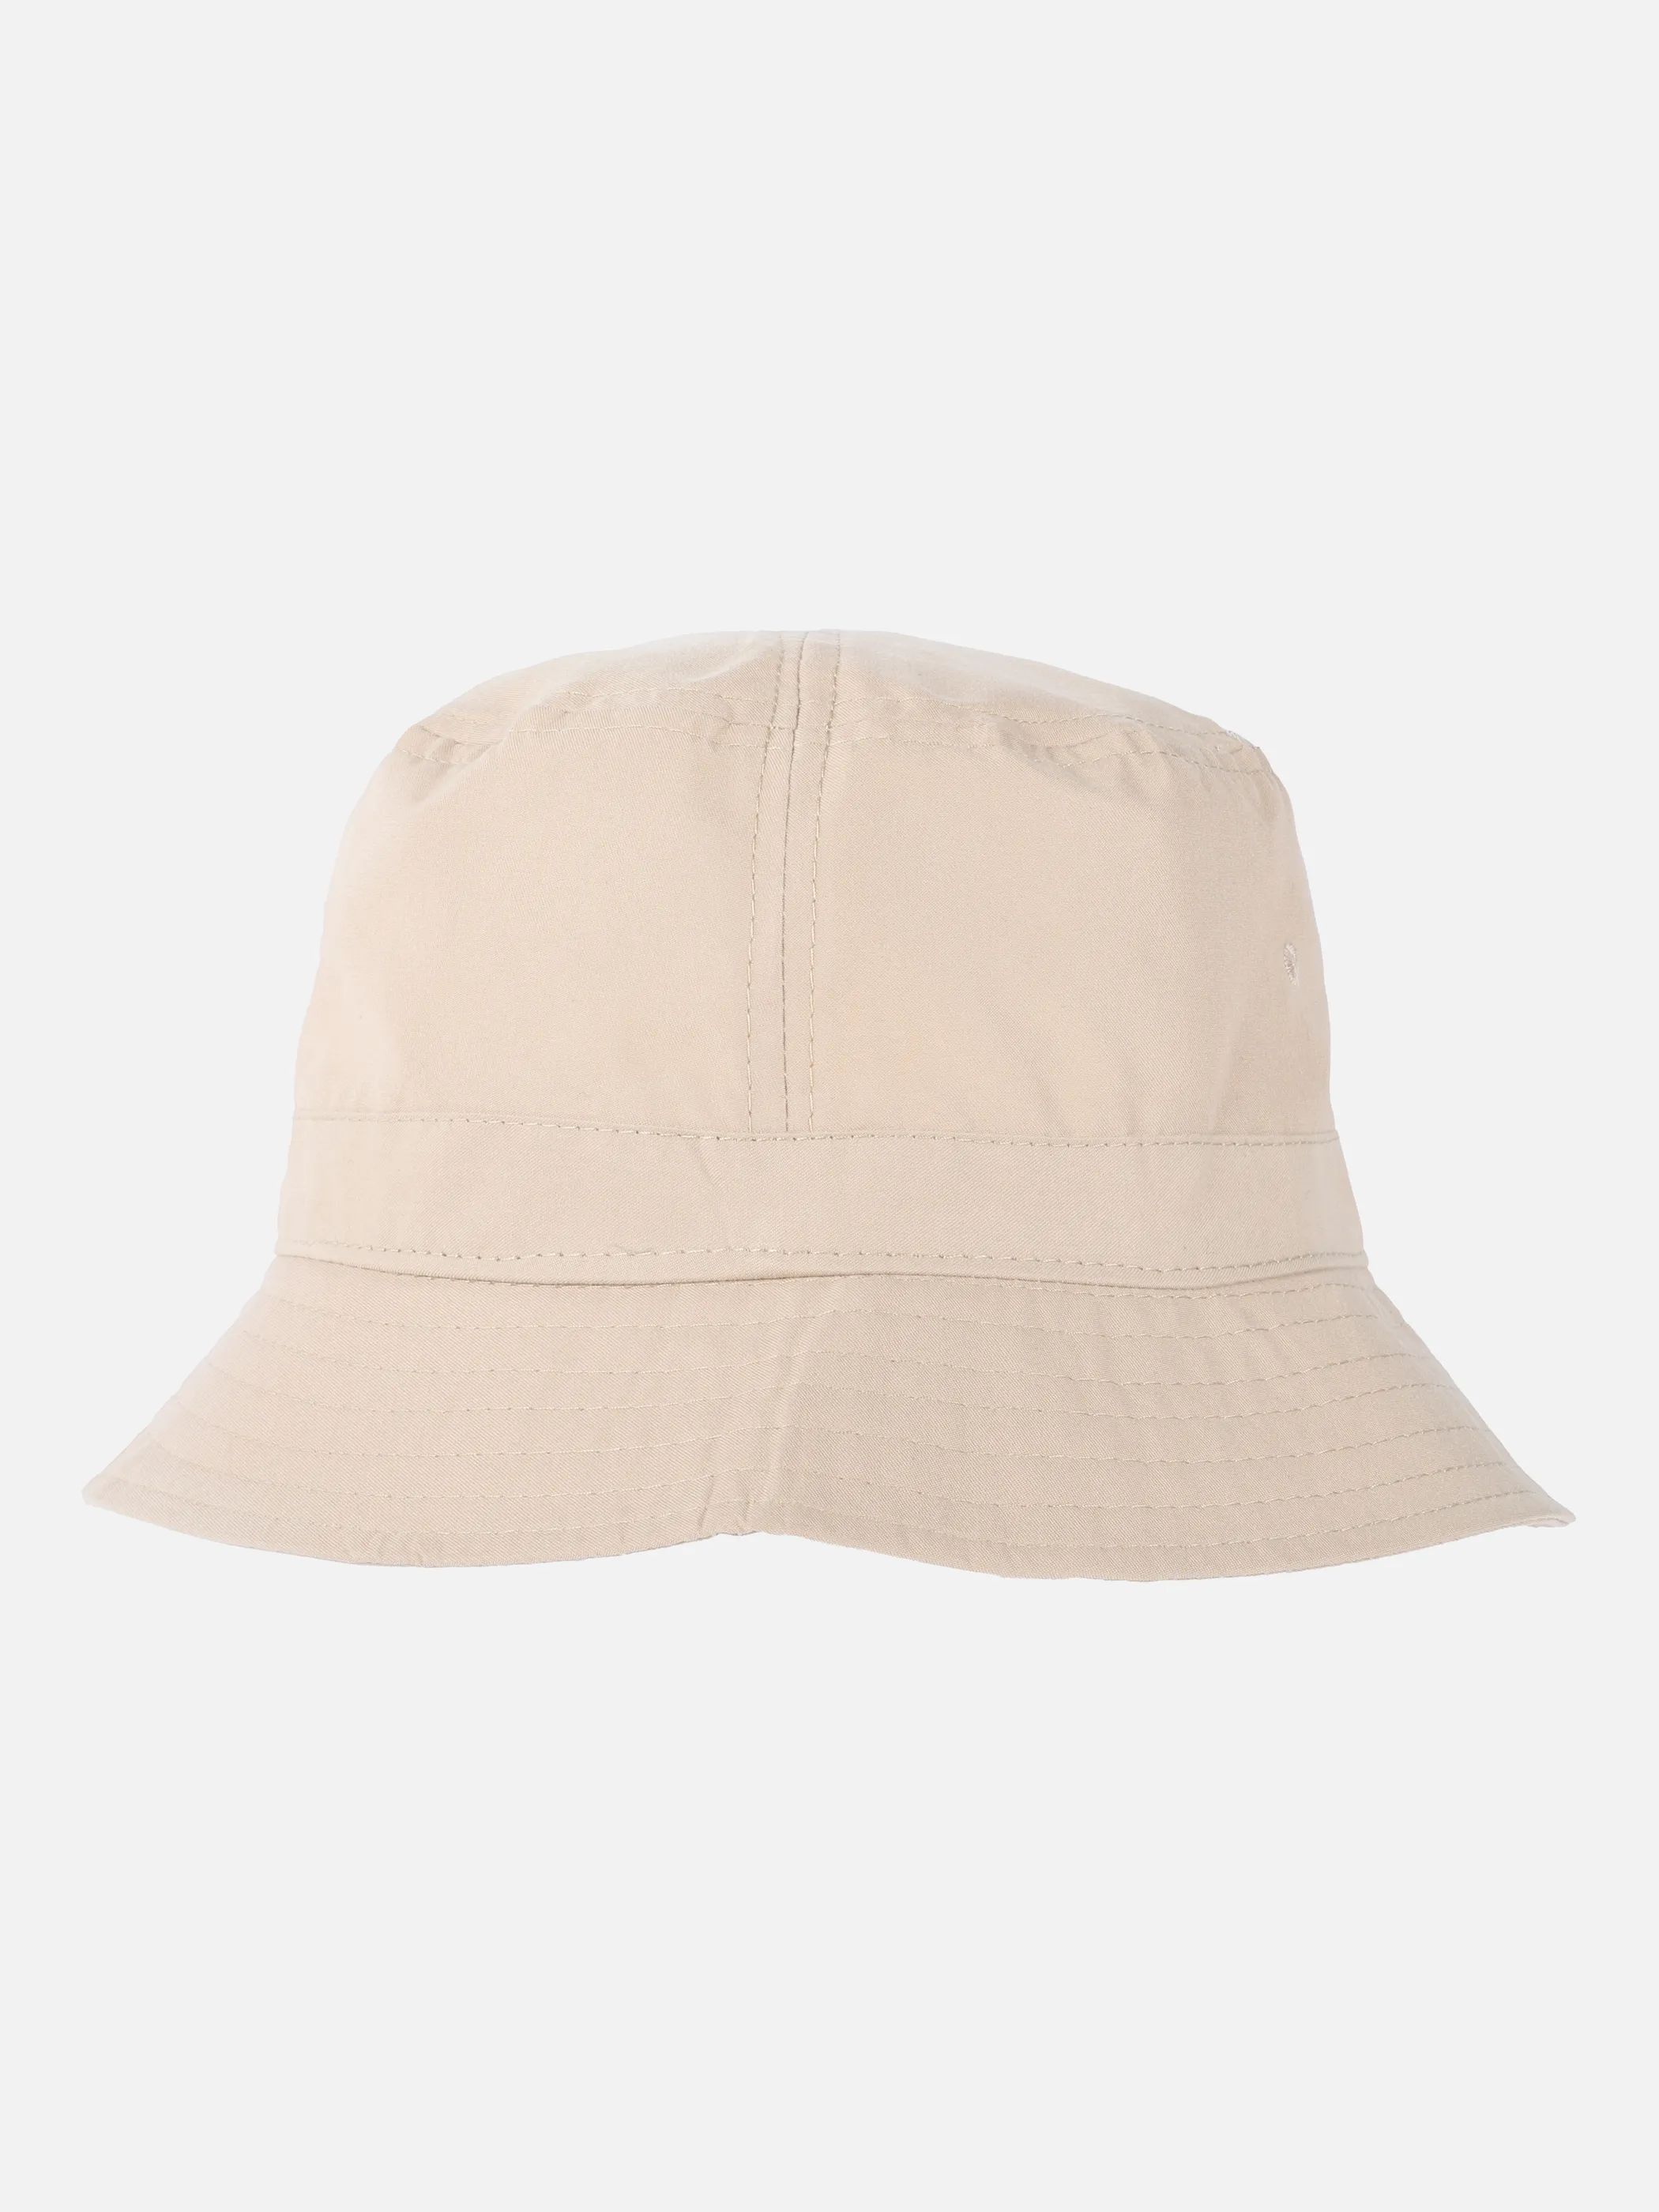 AWG Herren Caps Hüte jetzt günstig für | & Mode kaufen online Mützen,